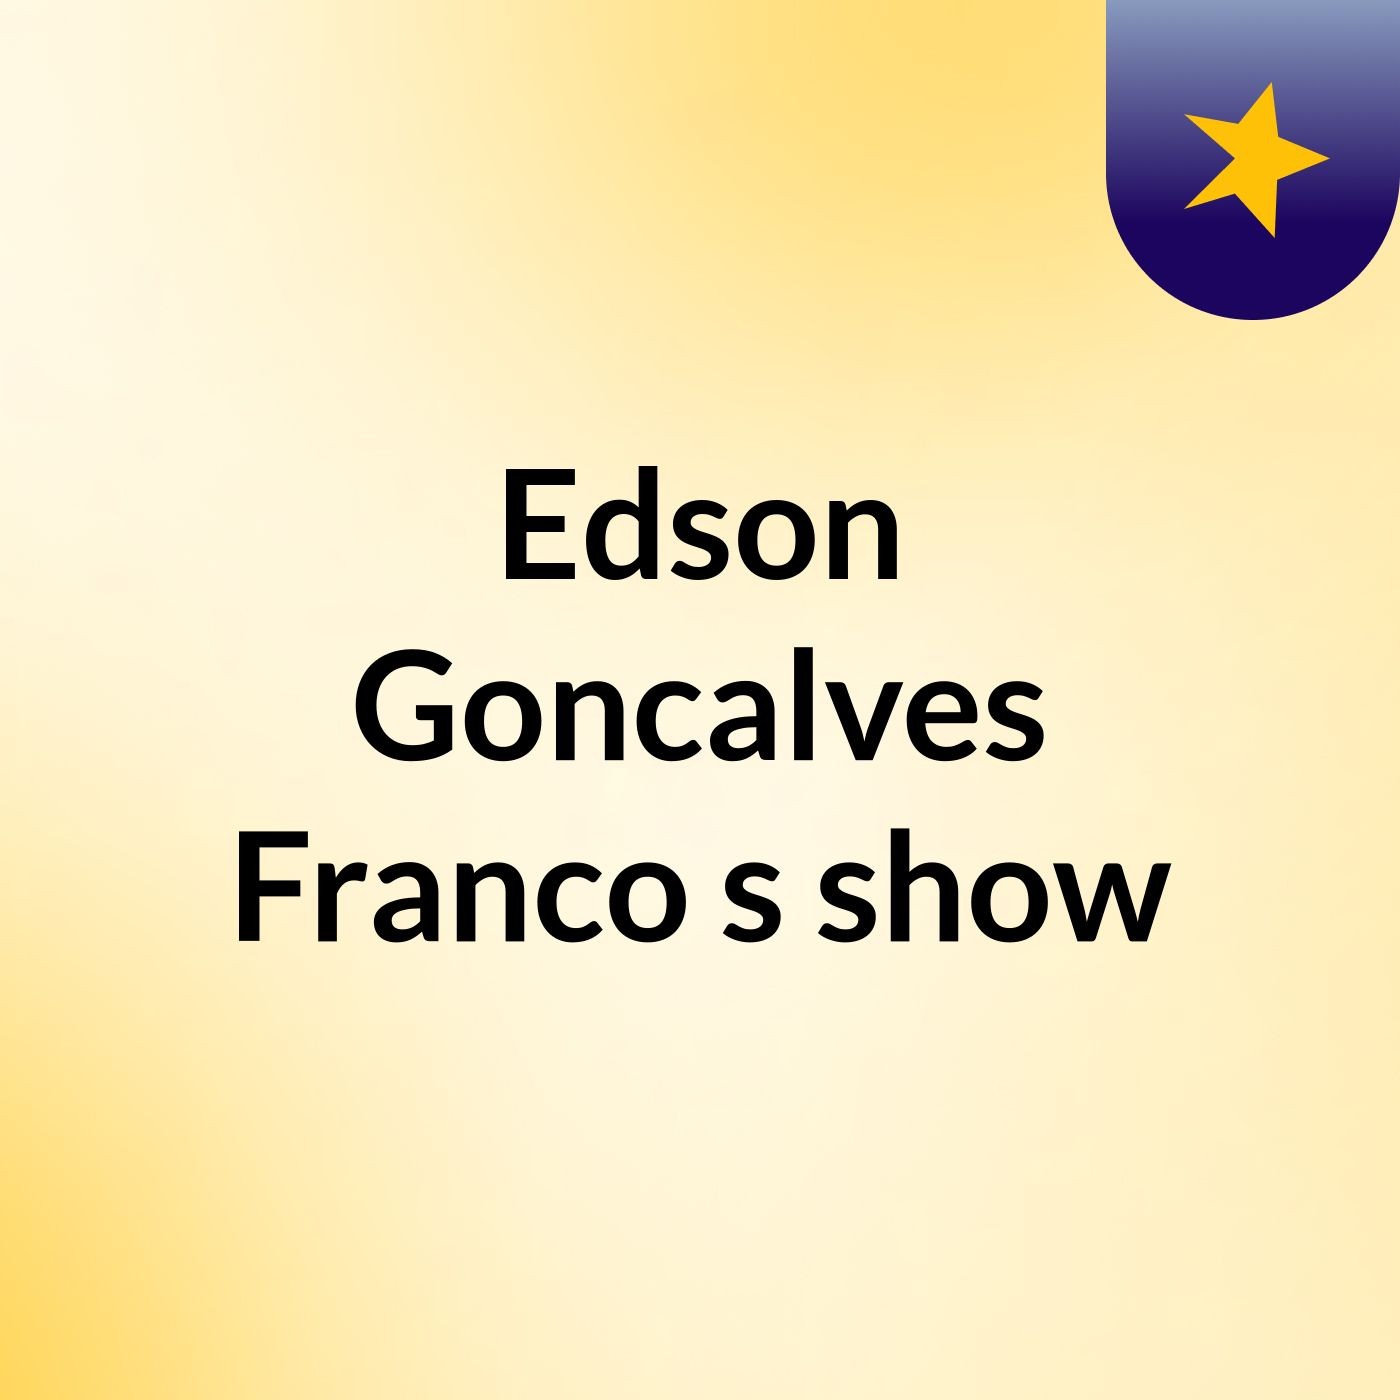 Edson Goncalves Franco's show